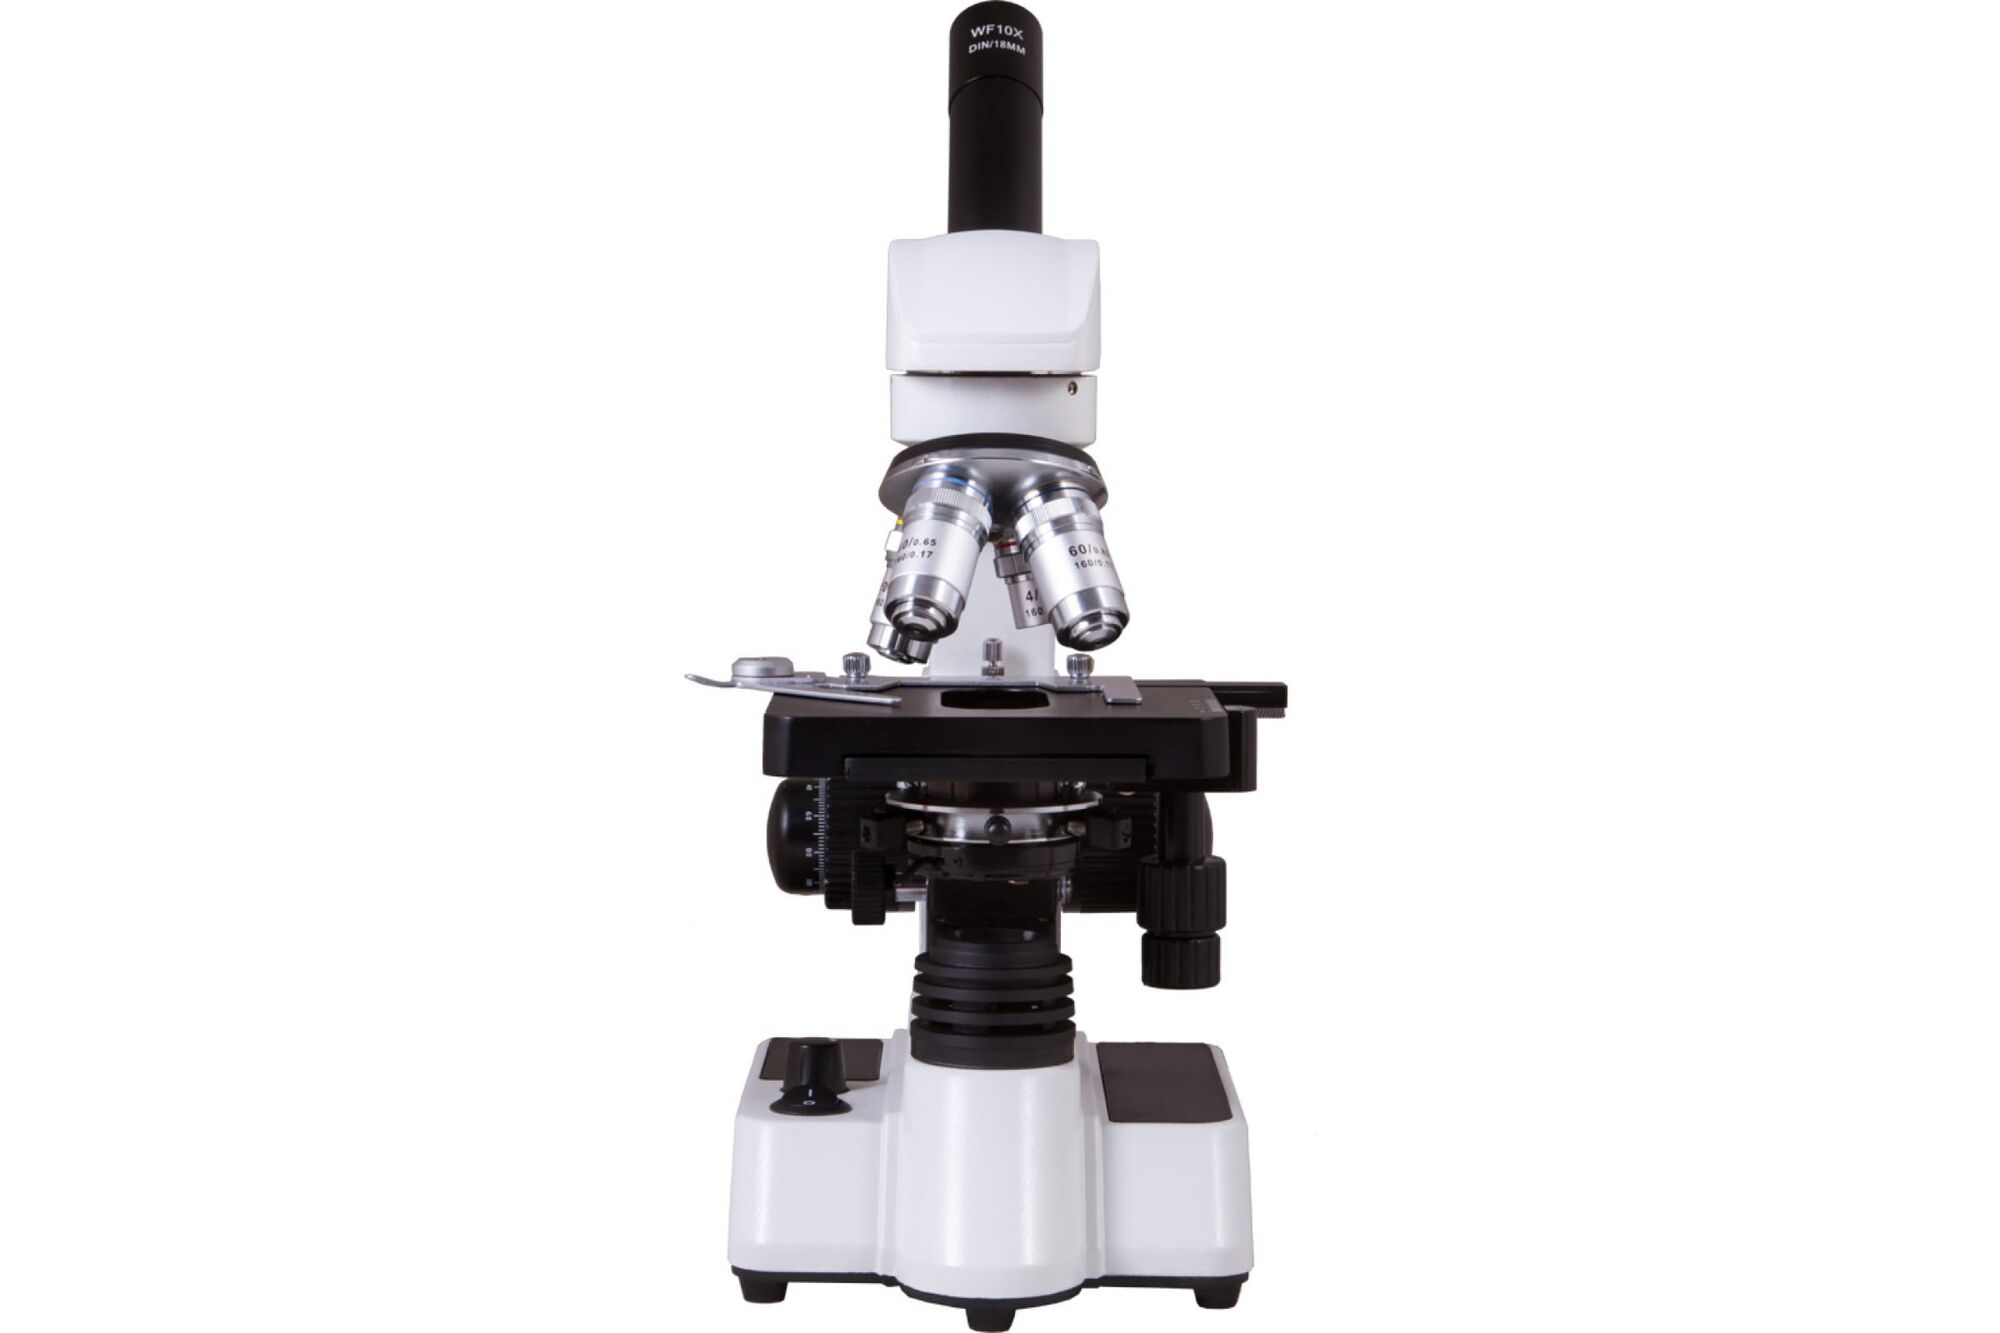 Микроскоп Bresser Erudit DLX 40–600x 70332